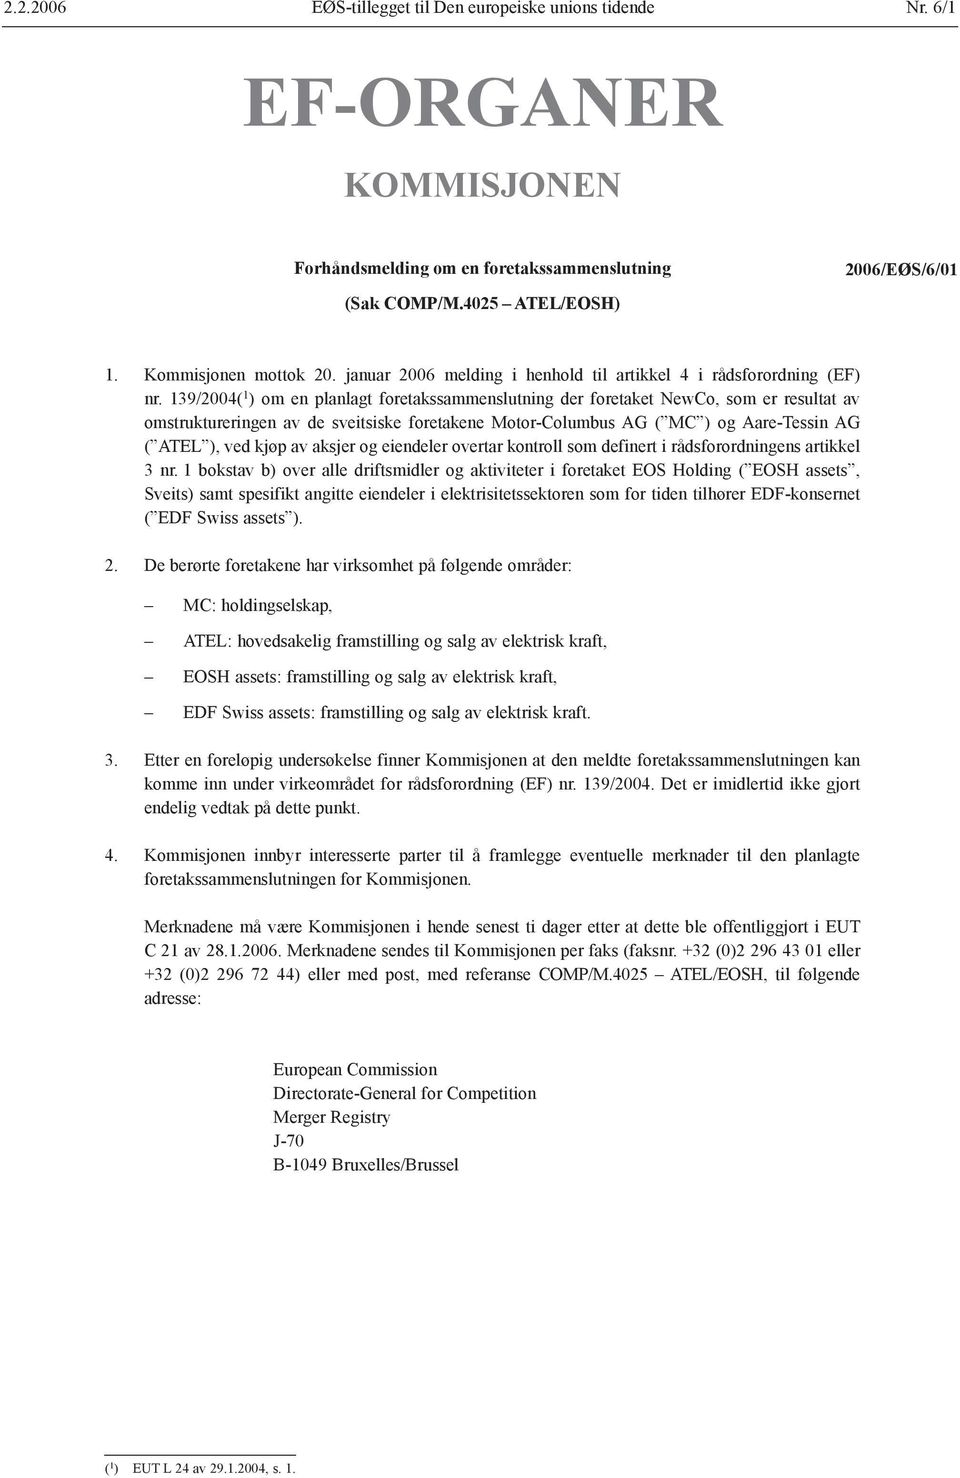 139/2004( 1 ) om en planlagt foretakssammenslutning der foretaket NewCo, som er resultat av omstruktureringen av de sveitsiske foretakene Motor-Columbus AG ( MC ) og Aare-Tessin AG ( ATEL ), ved kjøp